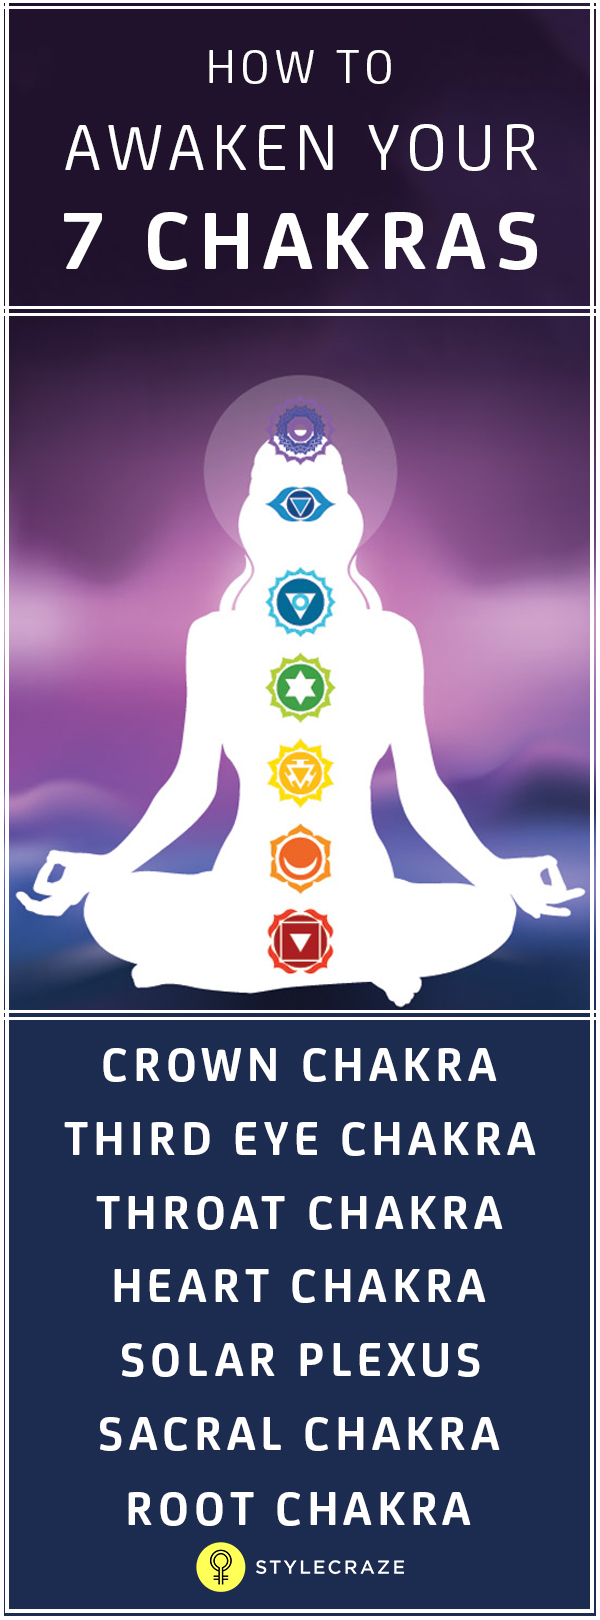 How to awaken your 7 chakras